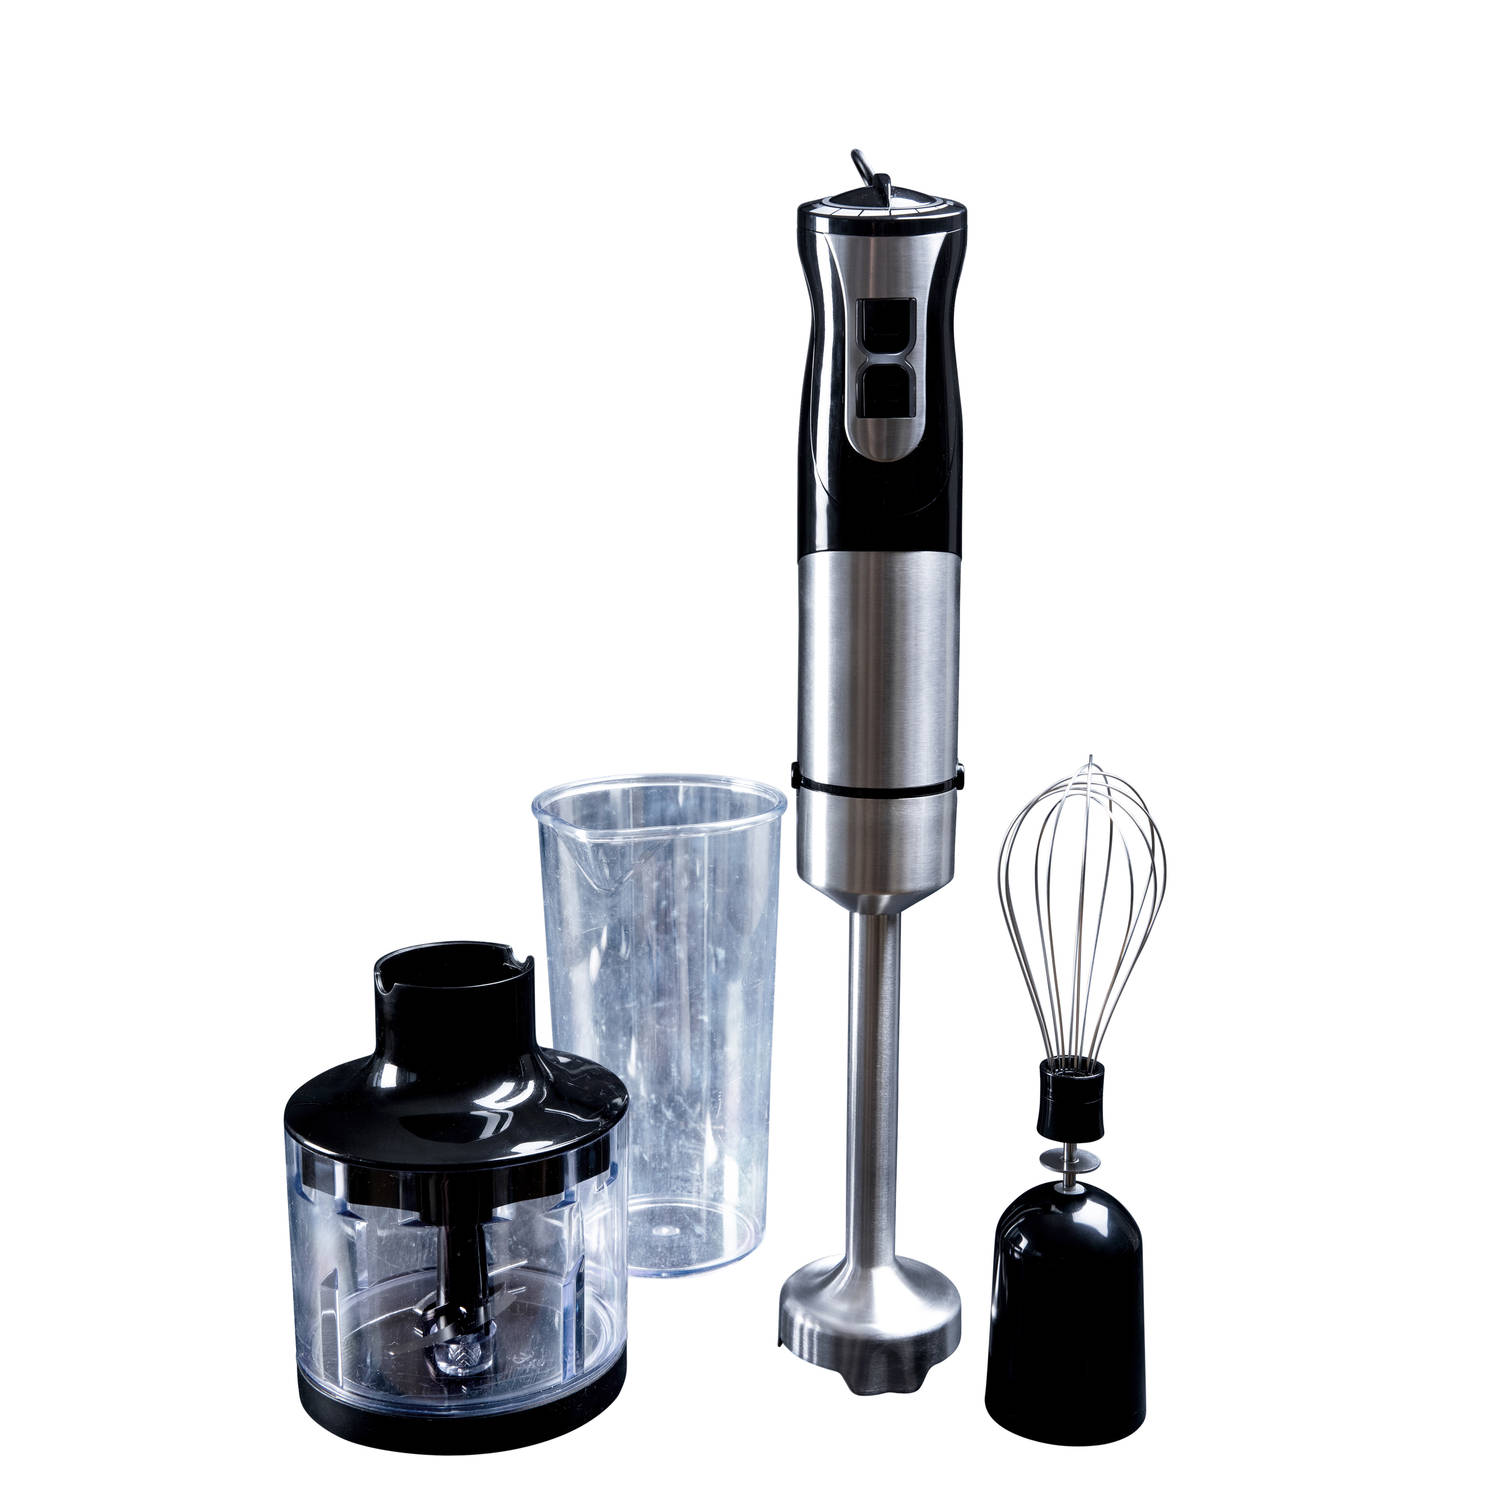 Staafmixer met hakmolen/schijf/kop voor multifunctioneel gebruik in jouw keuken Gastronoma RVS-Zwart